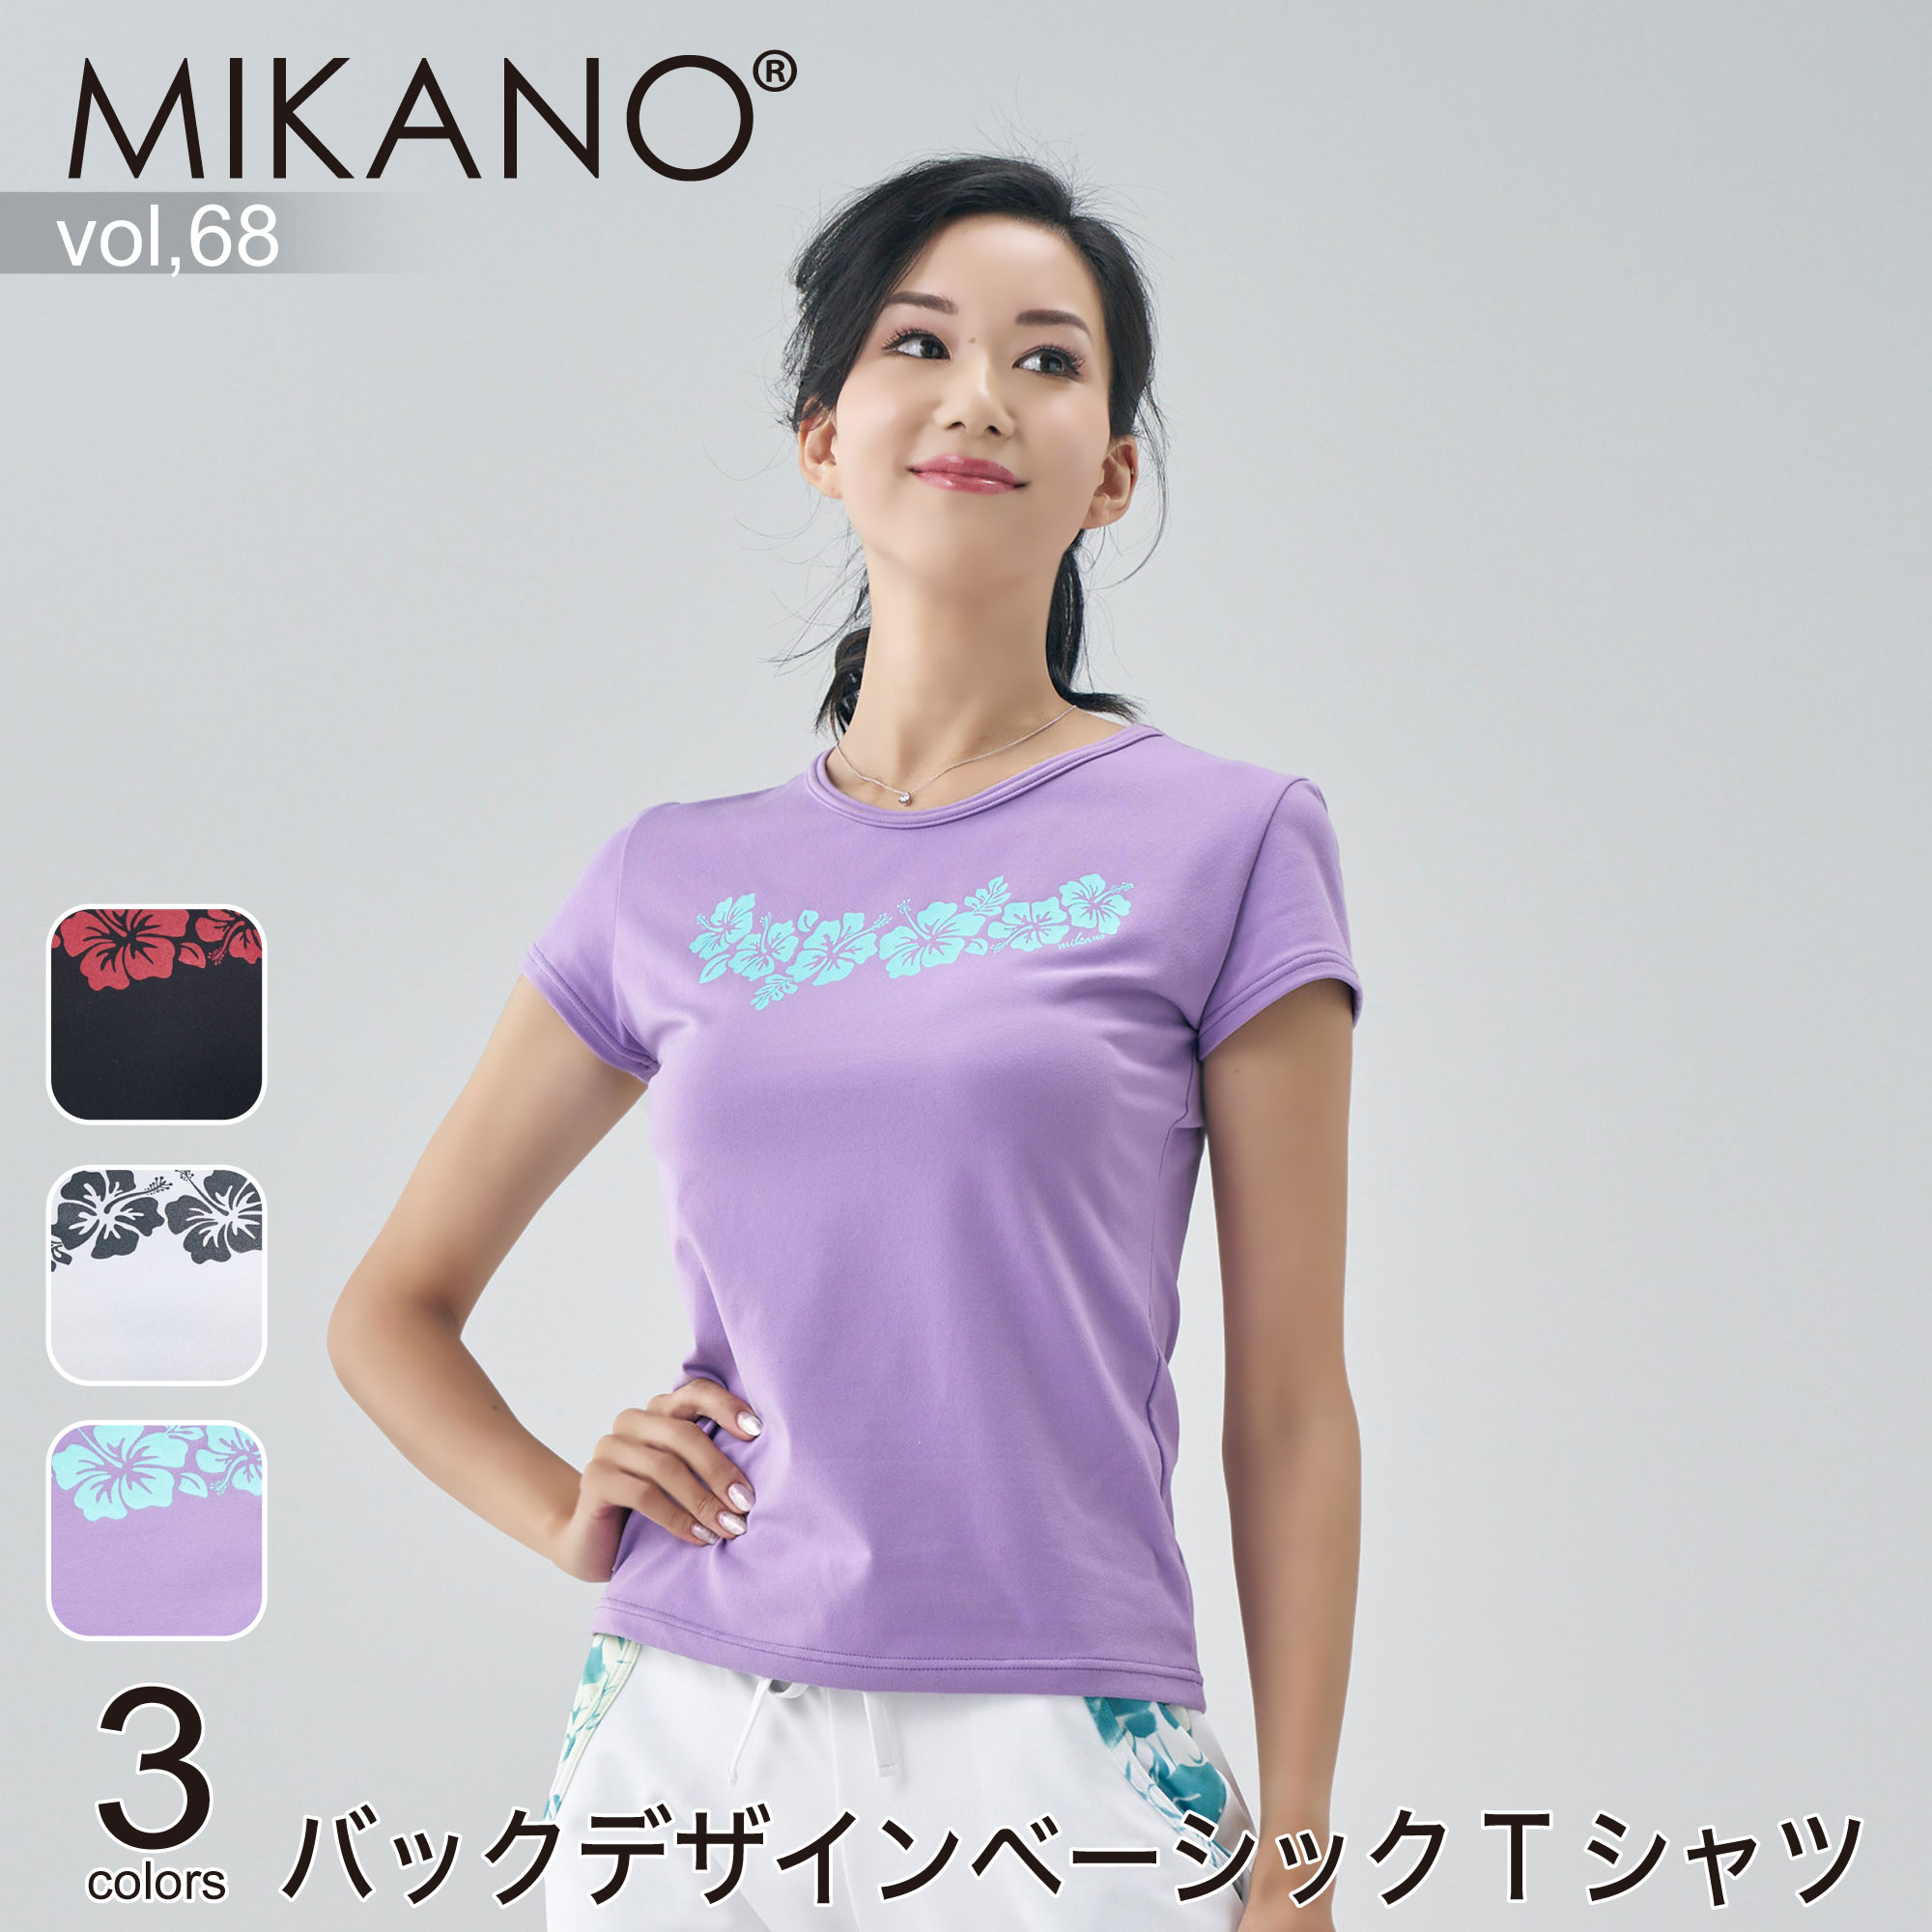  ミカノバックデザインベーシックTシャツ スポーツ フィットネス ウェア トレーニングウェア レディース ダンス エアロ MIKALANCE vol,68 ミカランセ 日本製